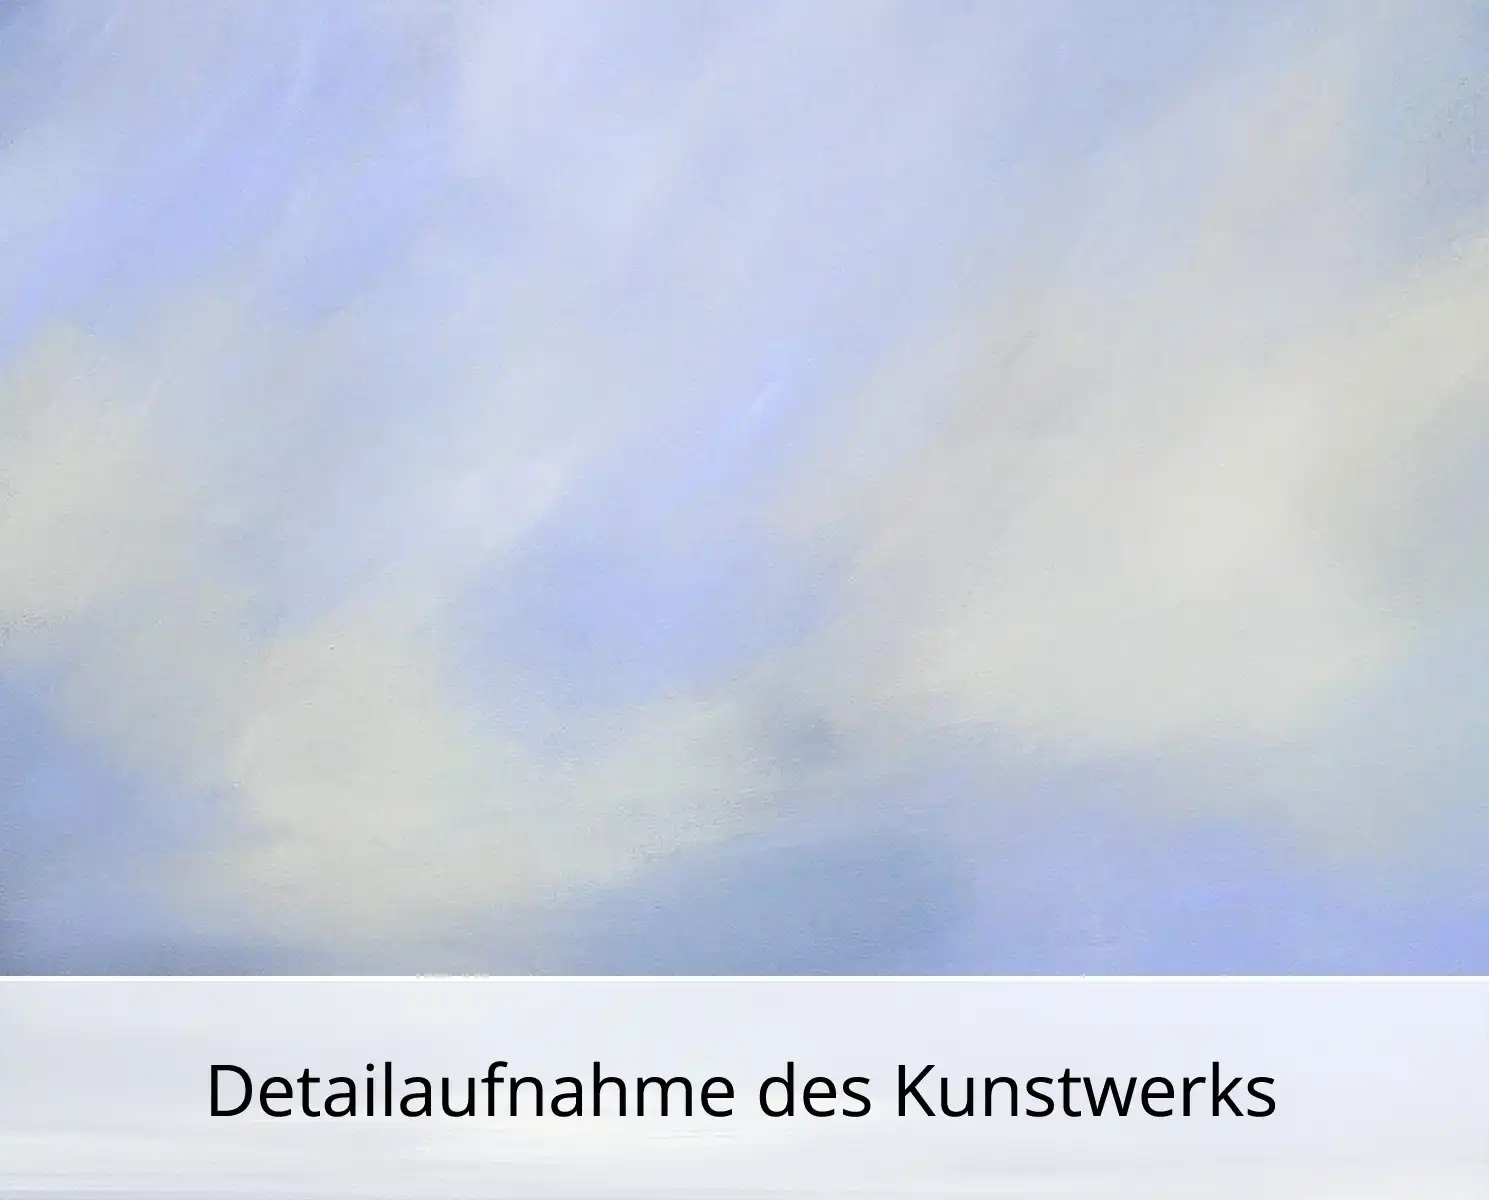 M. Kühne: "Weiter Horizont", Edition, signierter Kunstdruck, 1/100